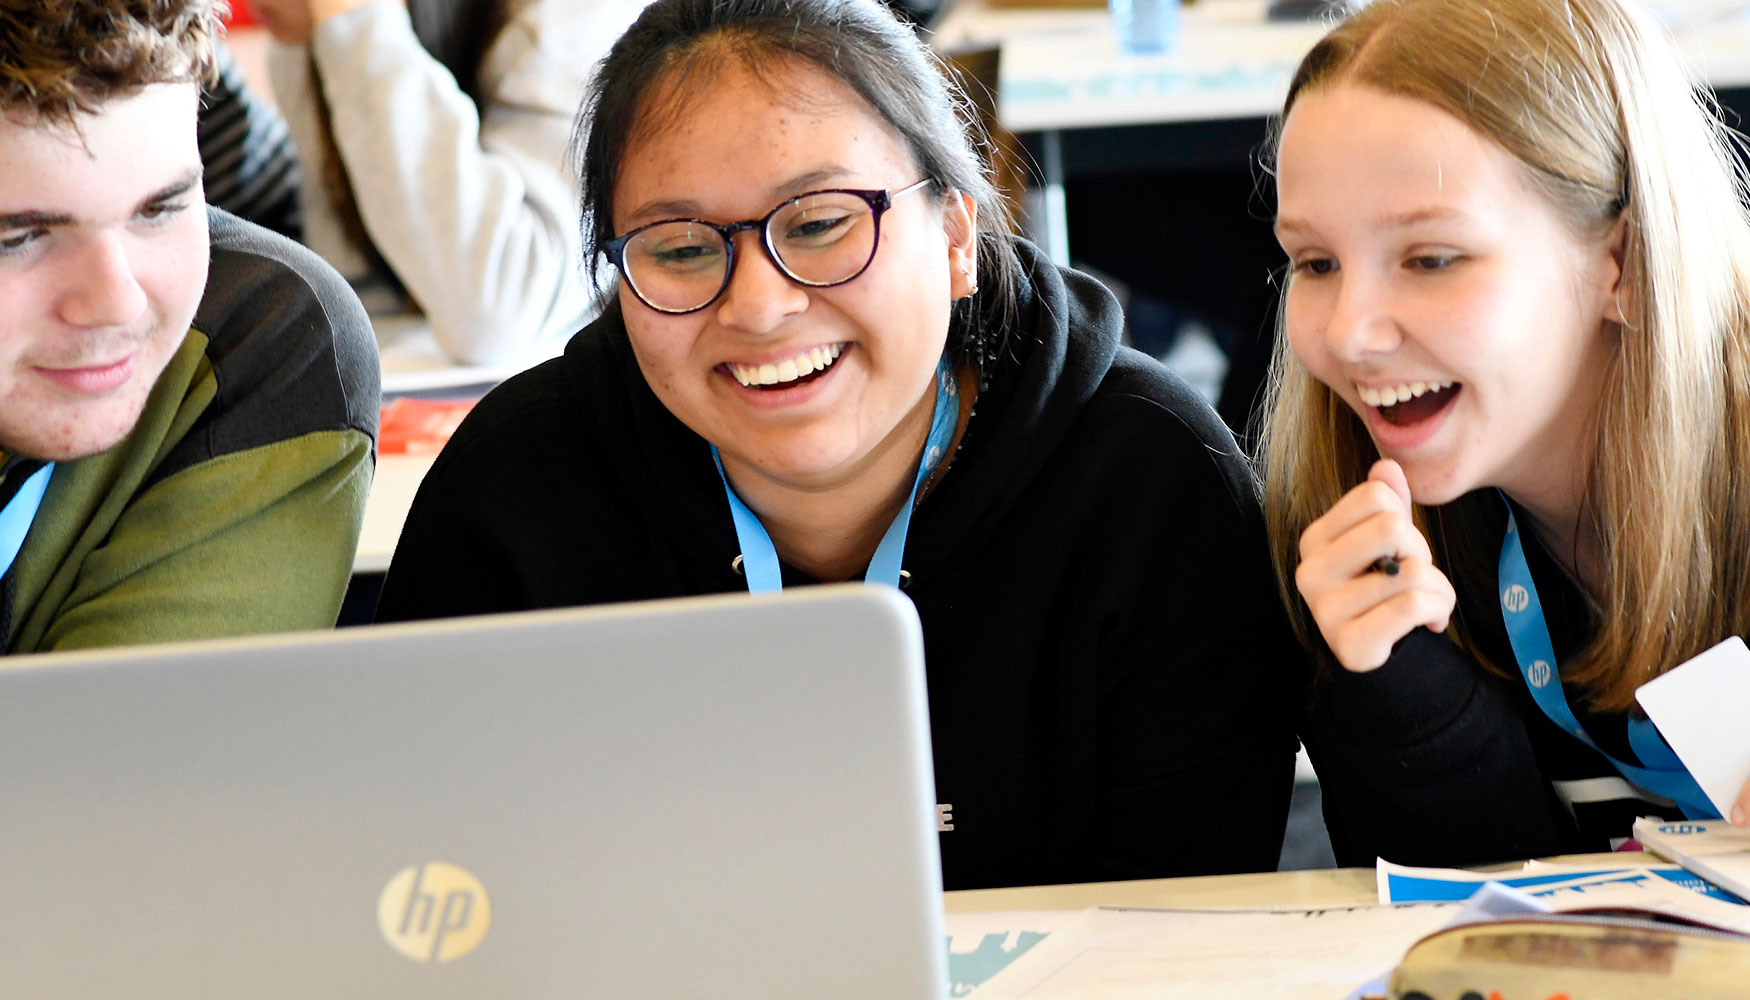 HP participa, entre otras actividades, en el programa STEM for Girls, una iniciativa educativa nacida dentro de la Red de Mujeres de Barcelona...